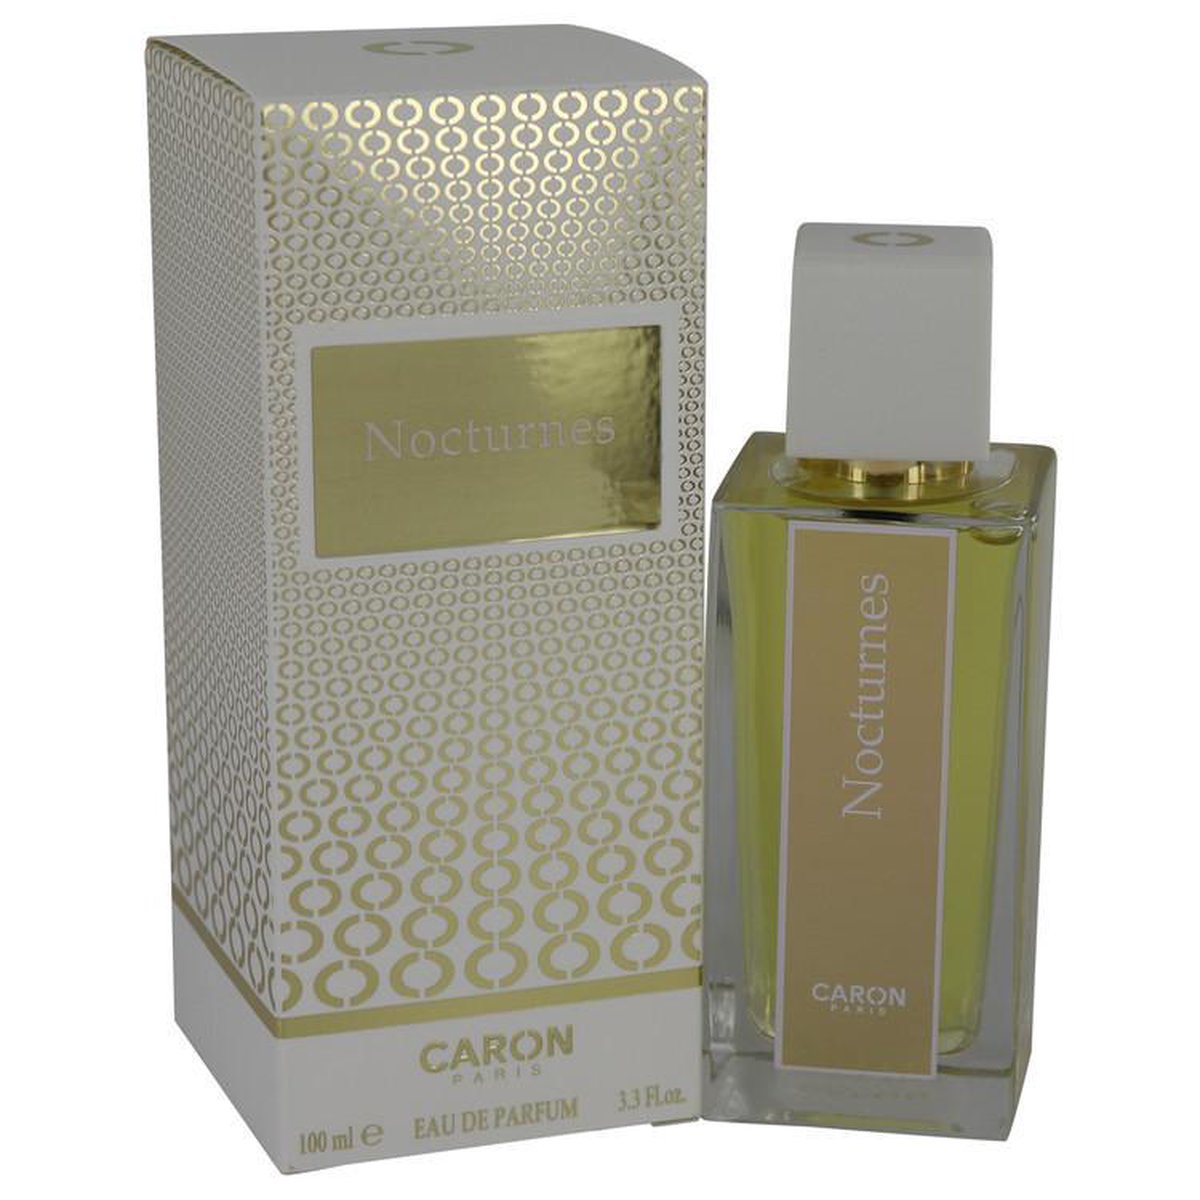 Caron Nocturnes D'caron eau de parfum spray 100 ml